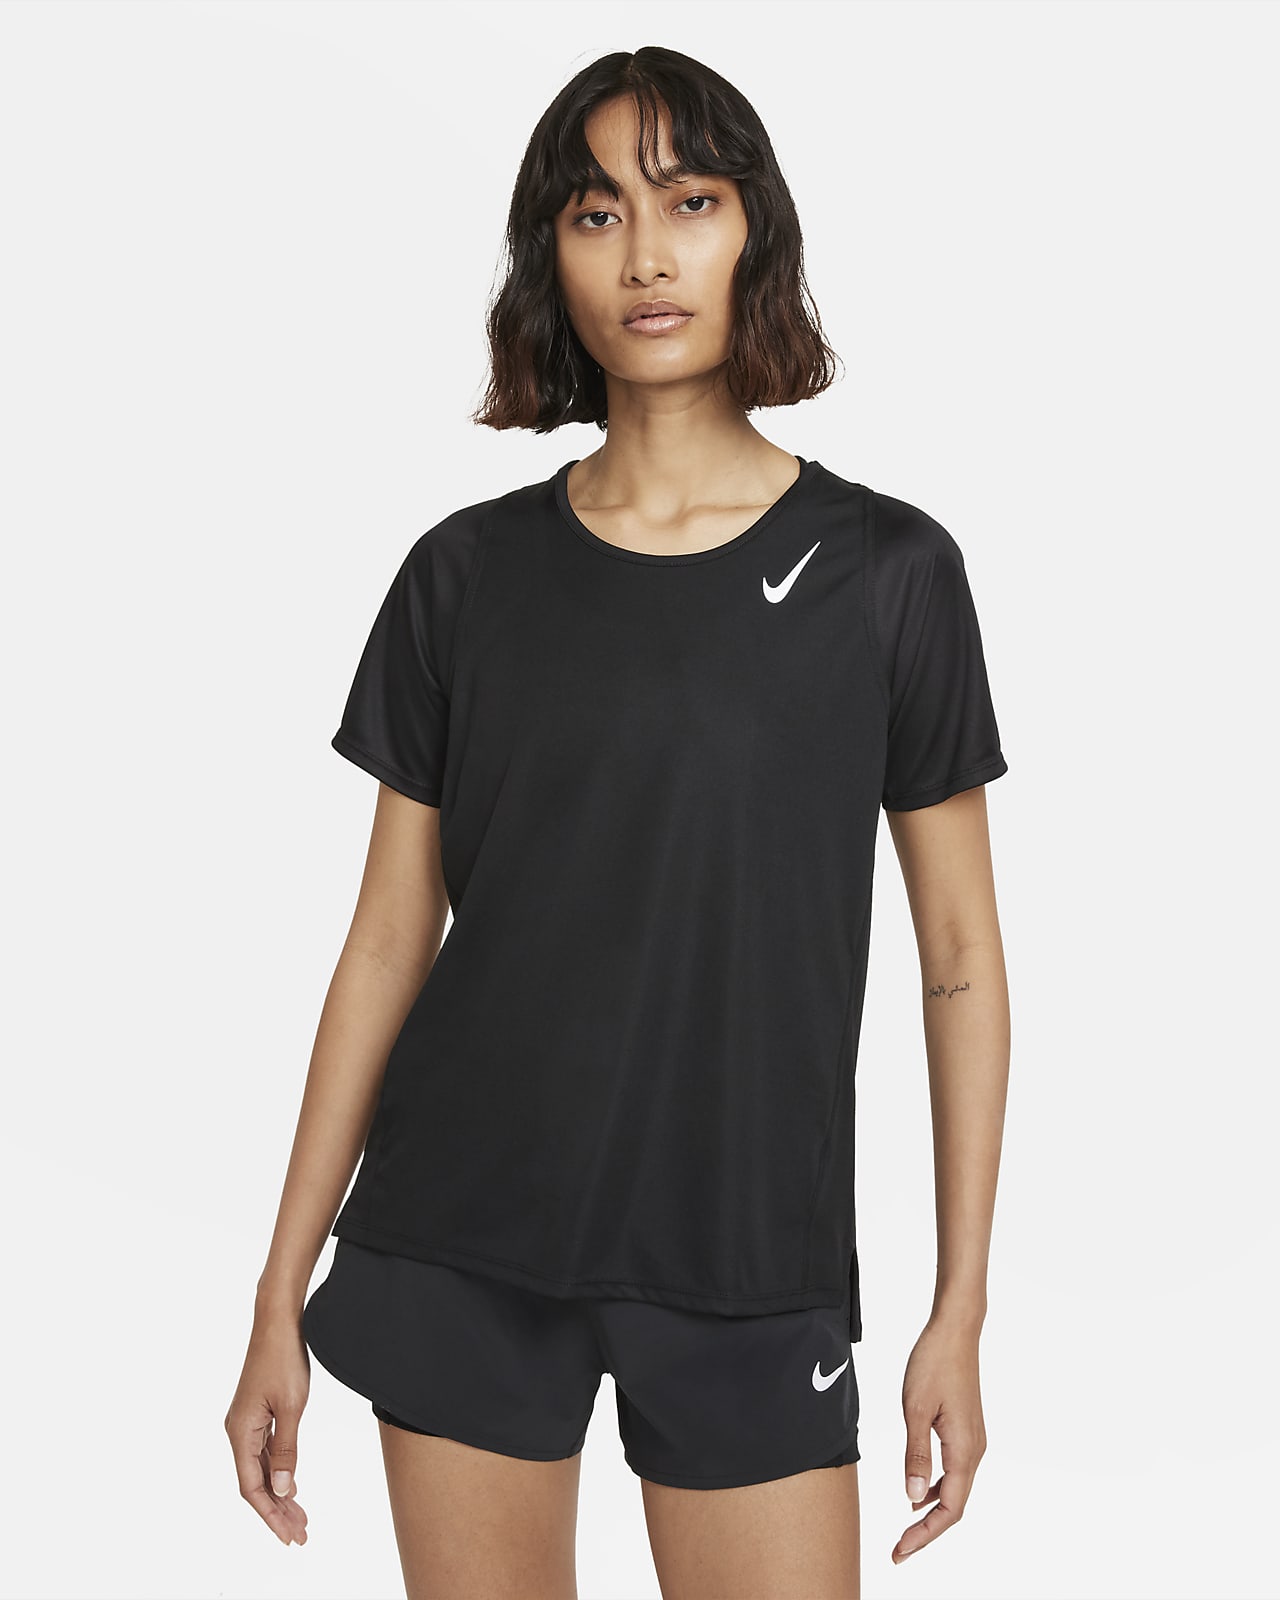 Kortärmad löpartröja Nike Dri-FIT Race för kvinnor